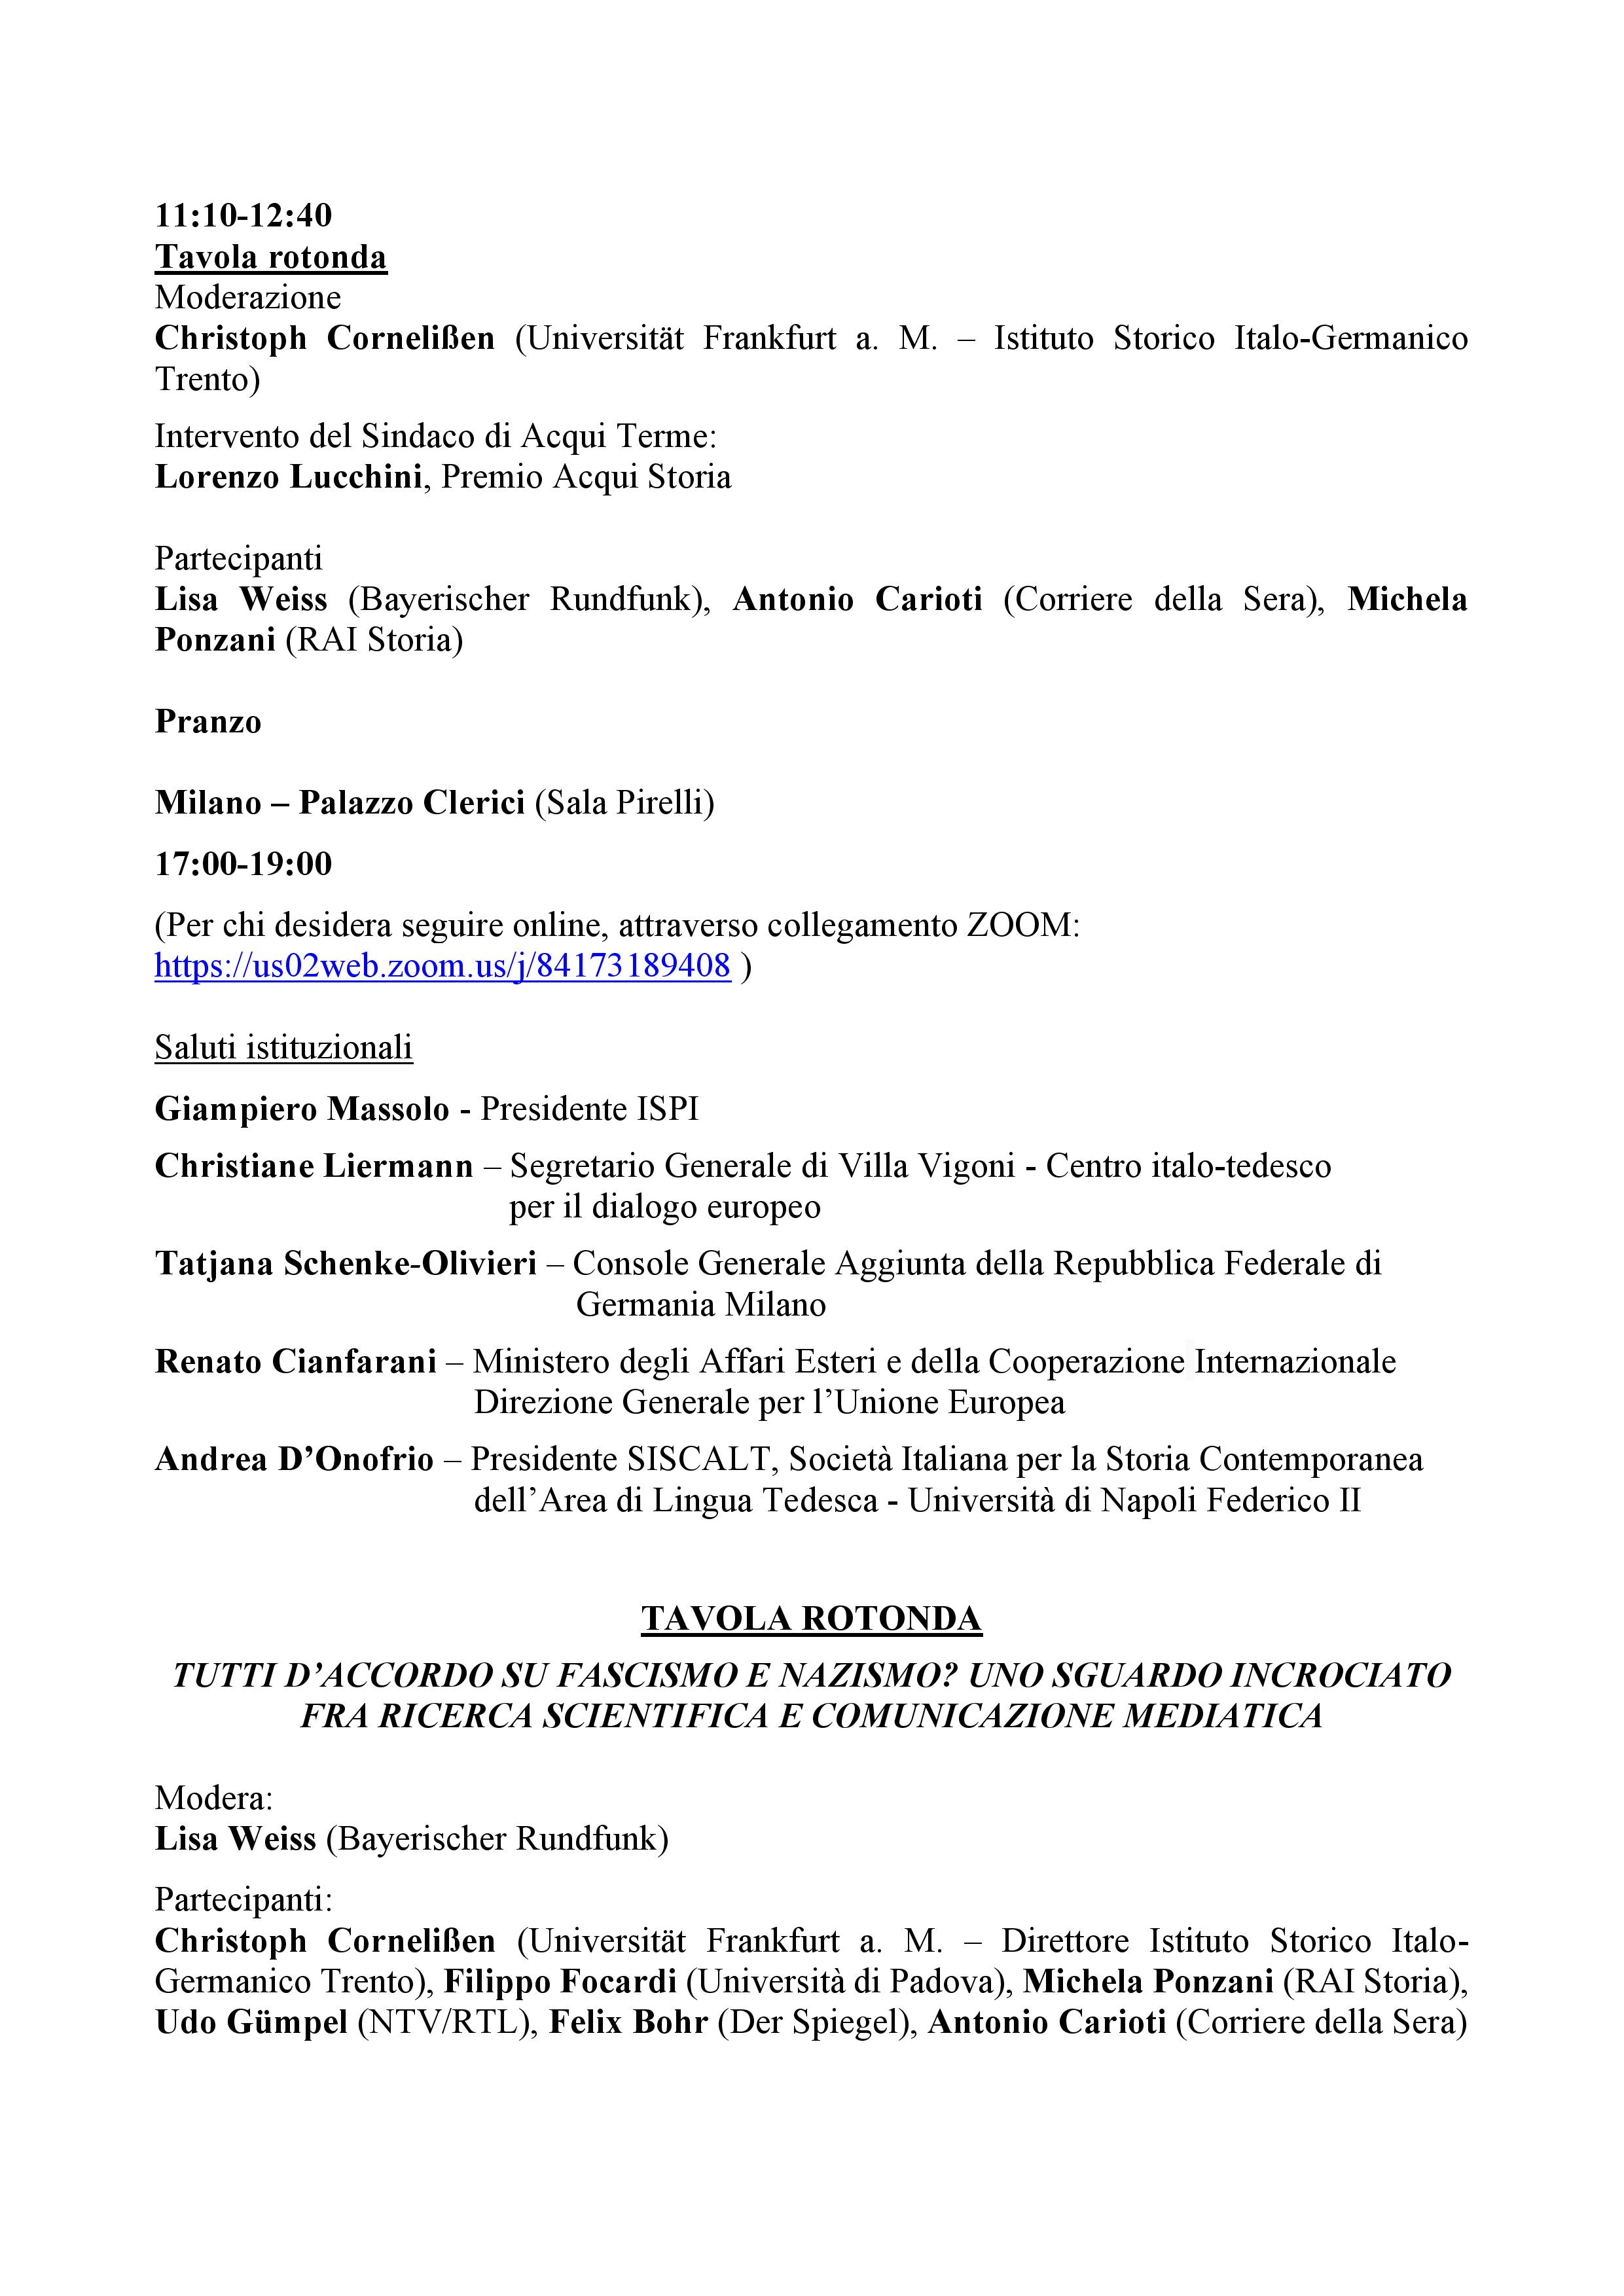 Programma def Convegno SISCALT- Villa.Vigoni 11-13 ottobre 2021 corretto-page-004